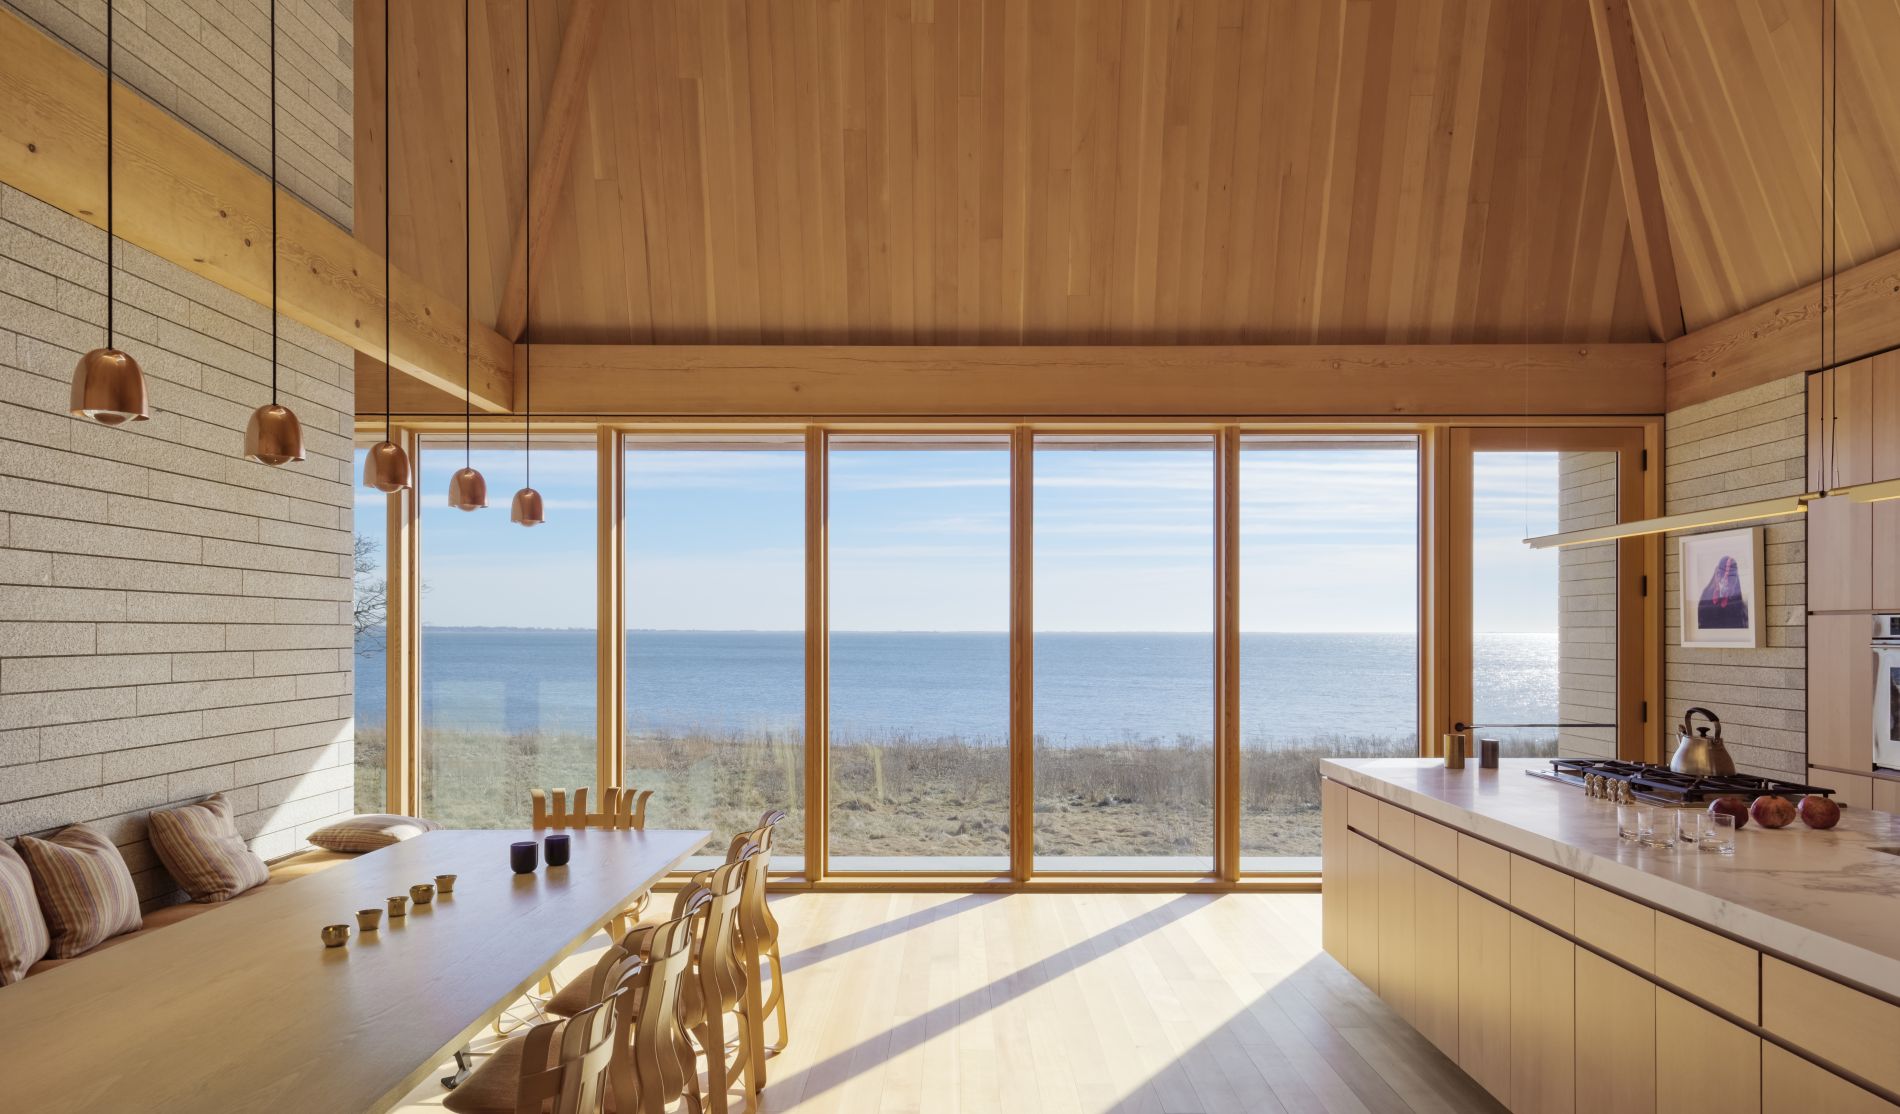 Một không gian ấn tượng với nội thất đa phần bằng gỗ tươi sáng trong phòng ăn của biệt thự Bayhouse, New England do Studio Rick Joy thiết kế. Từ đây, bạn có thể phóng tầm mắt ngắm nhìn bãi biển trong xanh, yên bình.